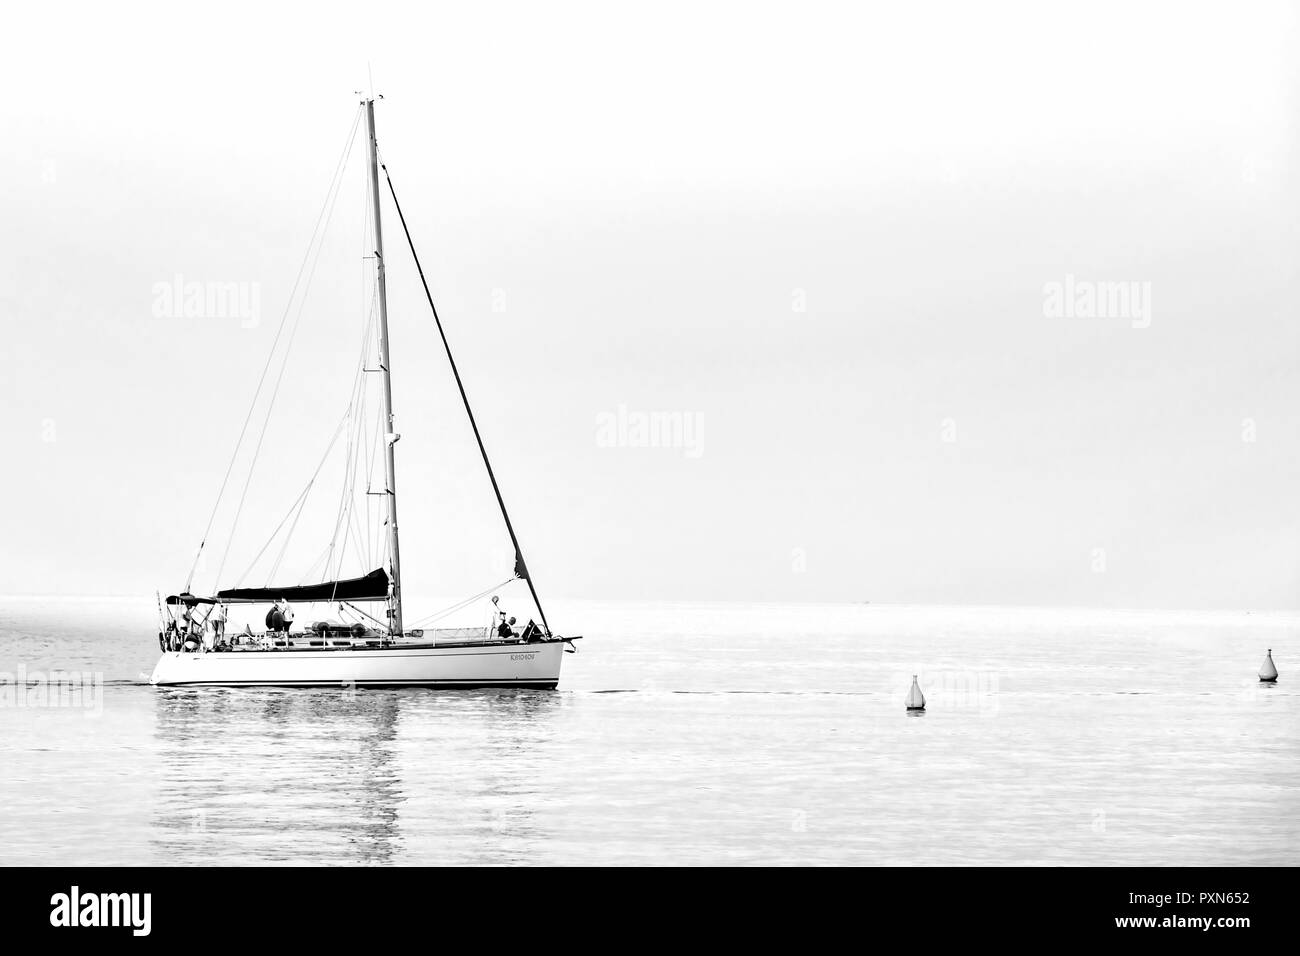 Un solitario velero en un mar en calma Stock Photo